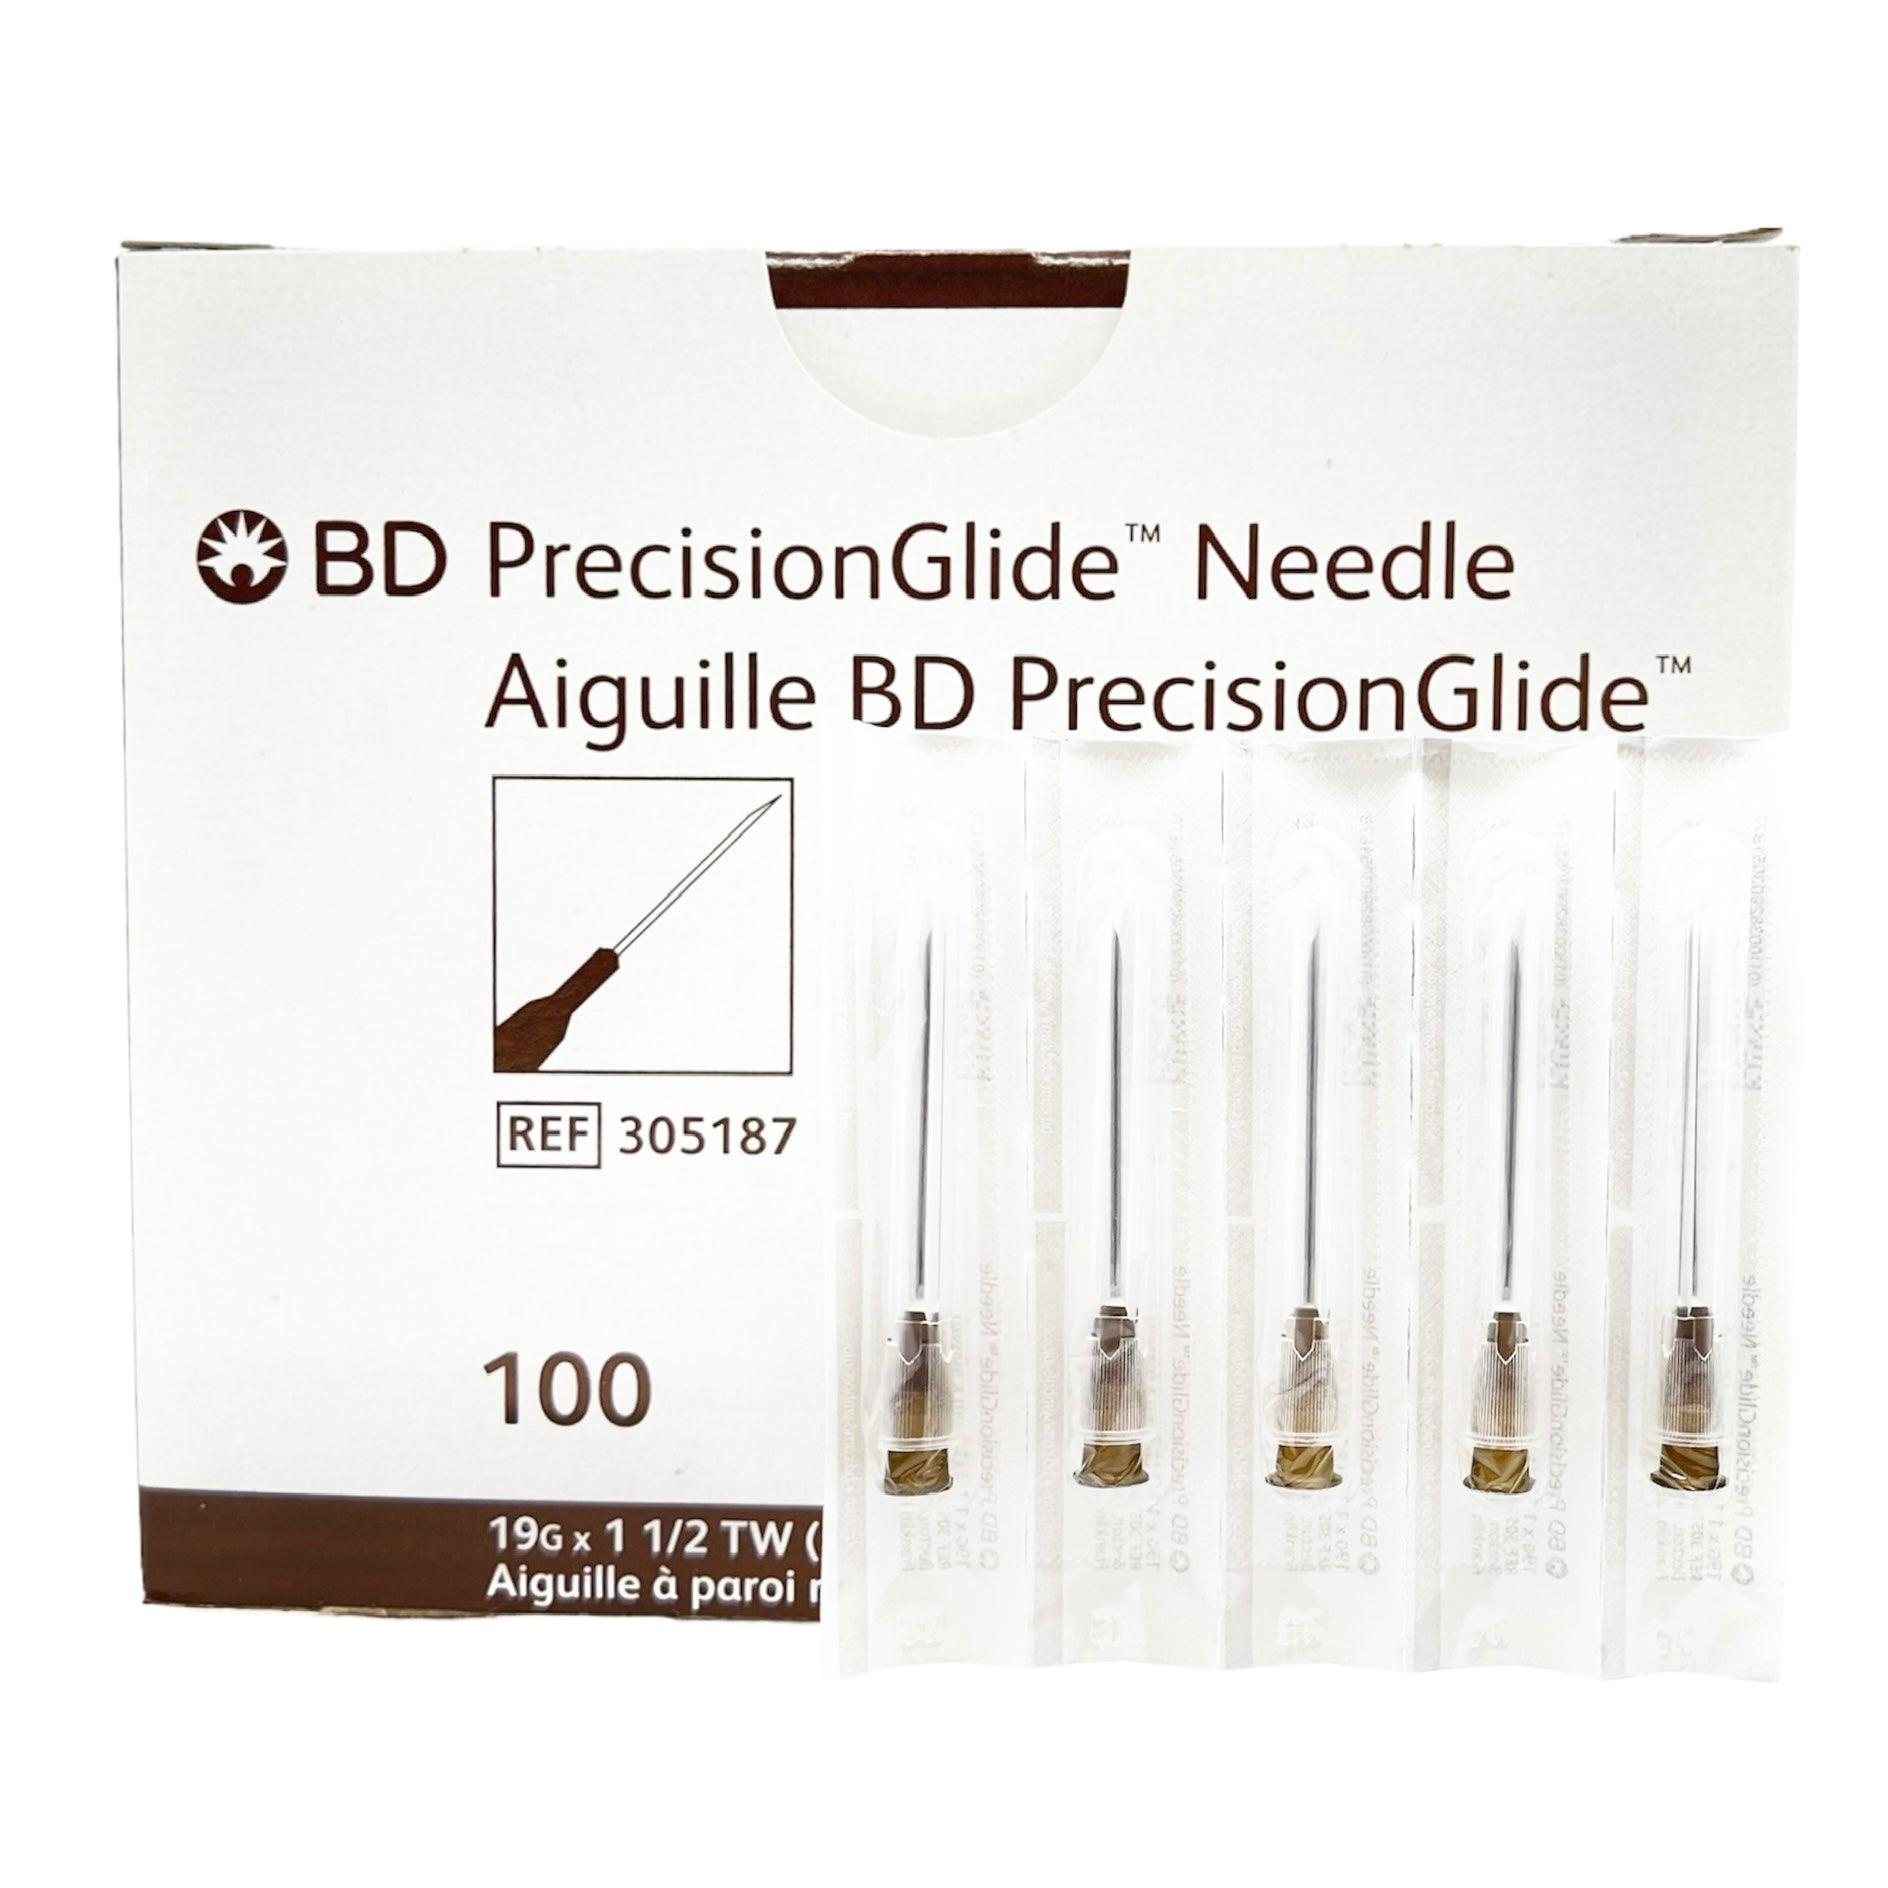 BD 305187 Hypodermic Needle Precision Glide 19G x 1 1/2 " (100pcs/box)